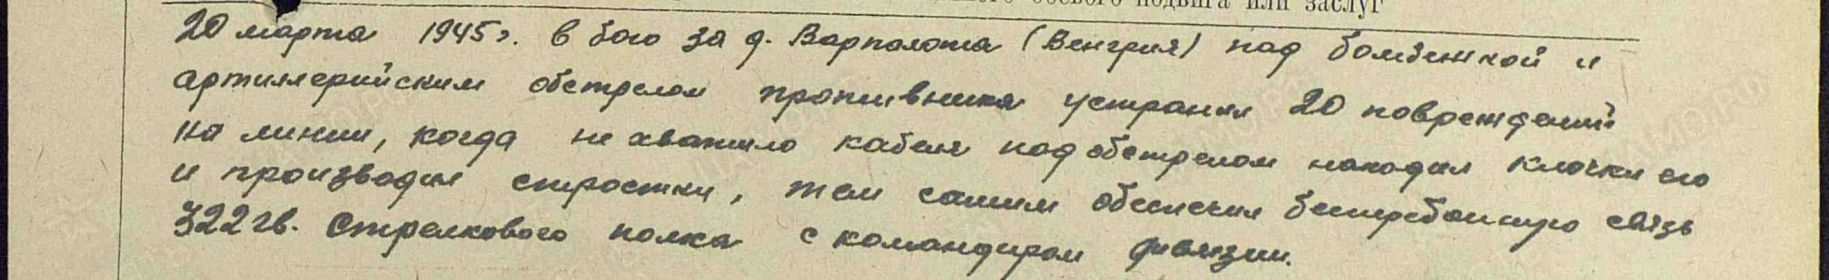 Приказ подразделения №: 16/н от: 28.04.1945 Издан: 103 гв. сд 3 Украинского фронта